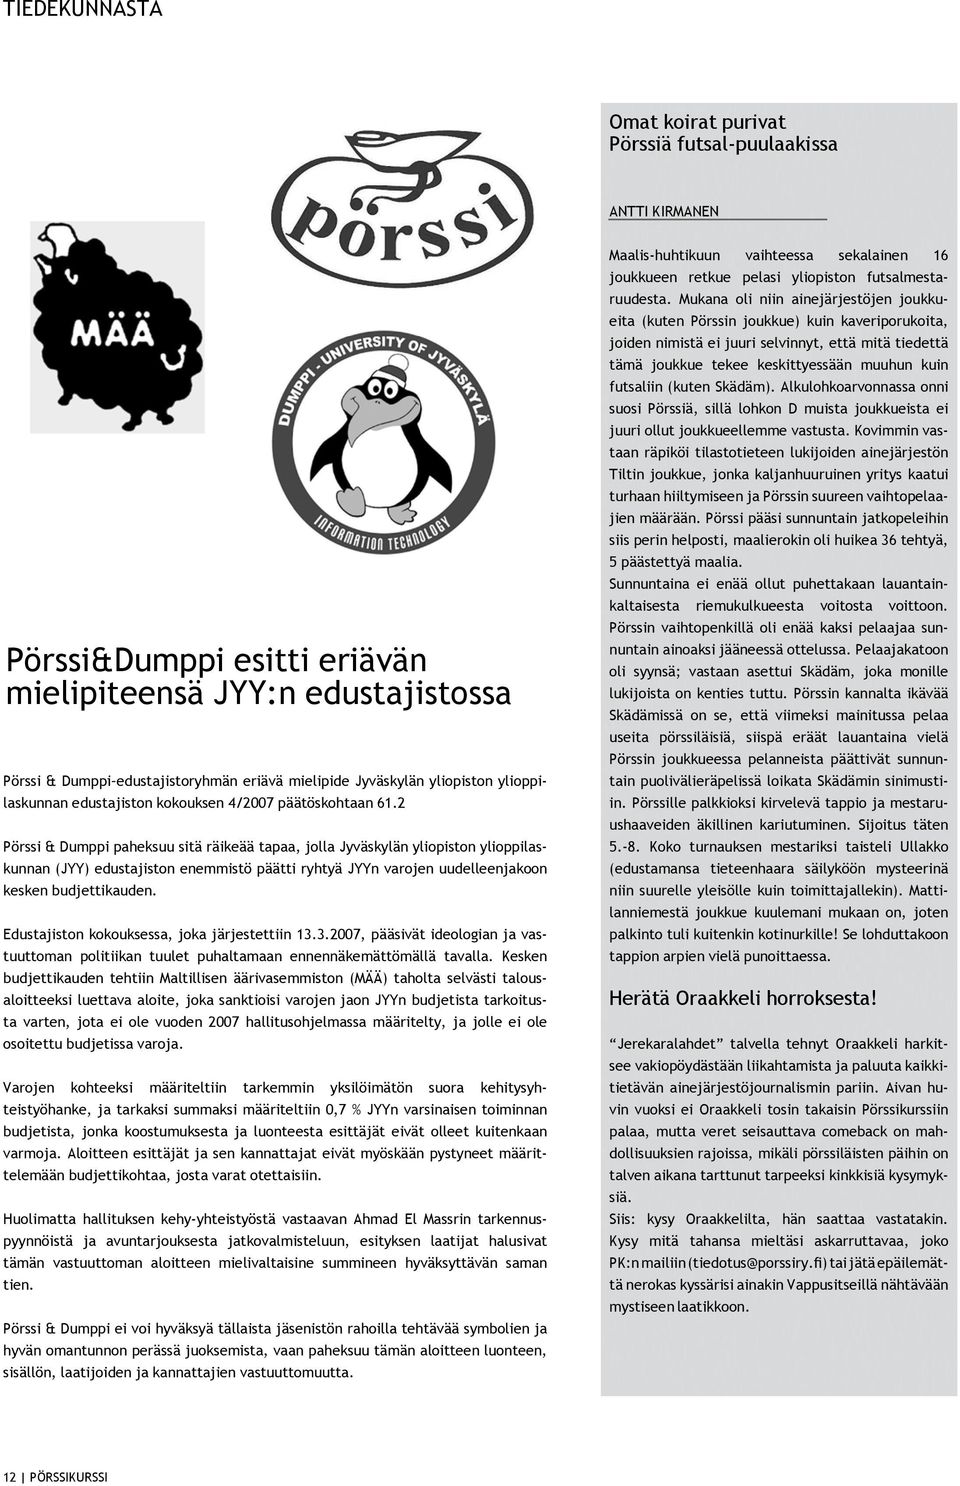 2 Pörssi & Dumppi paheksuu sitä räikeää tapaa, jolla Jyväskylän yliopiston ylioppilaskunnan (JYY) edustajiston enemmistö päätti ryhtyä JYYn varojen uudelleenjakoon kesken budjettikauden.